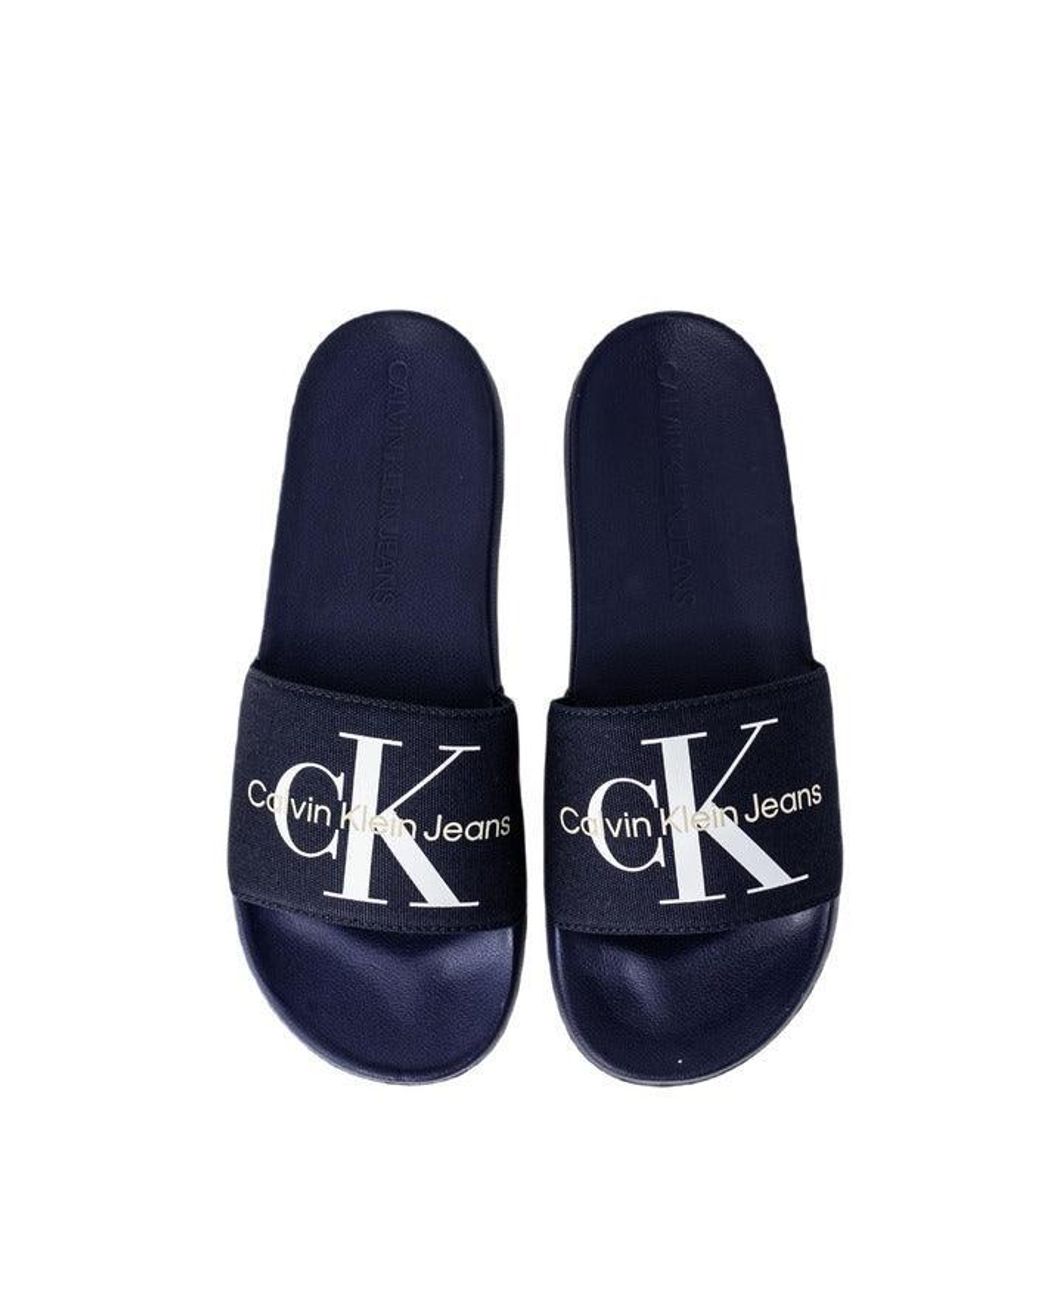 Calvin Klein Men Flip Flops - Buy Black Color Calvin Klein Men Flip Flops  Online at Best Price - Shop Online for Footwears in India | Flipkart.com